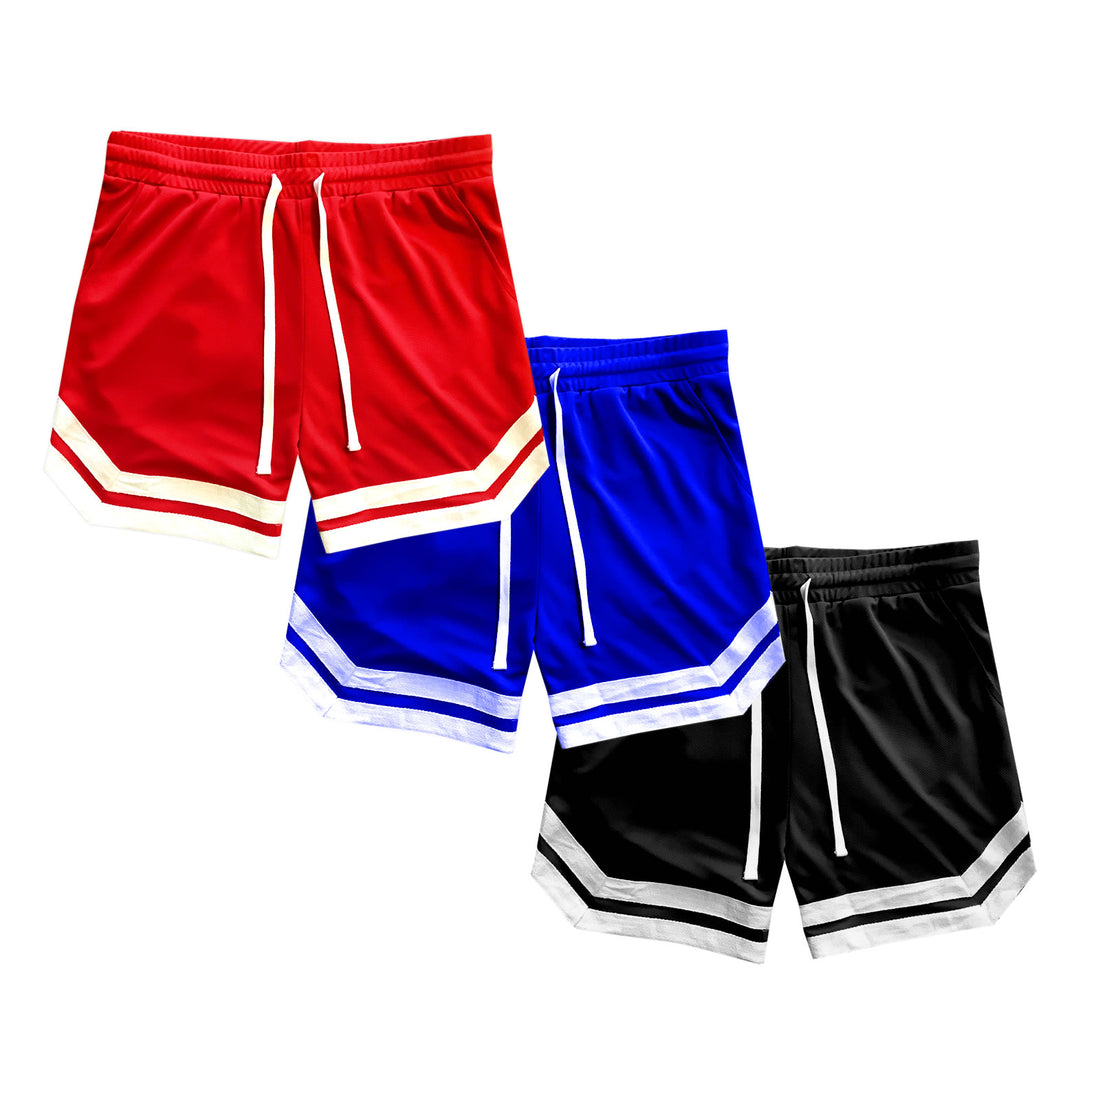 New Mens Mesh Basketball Shorts With Pockets